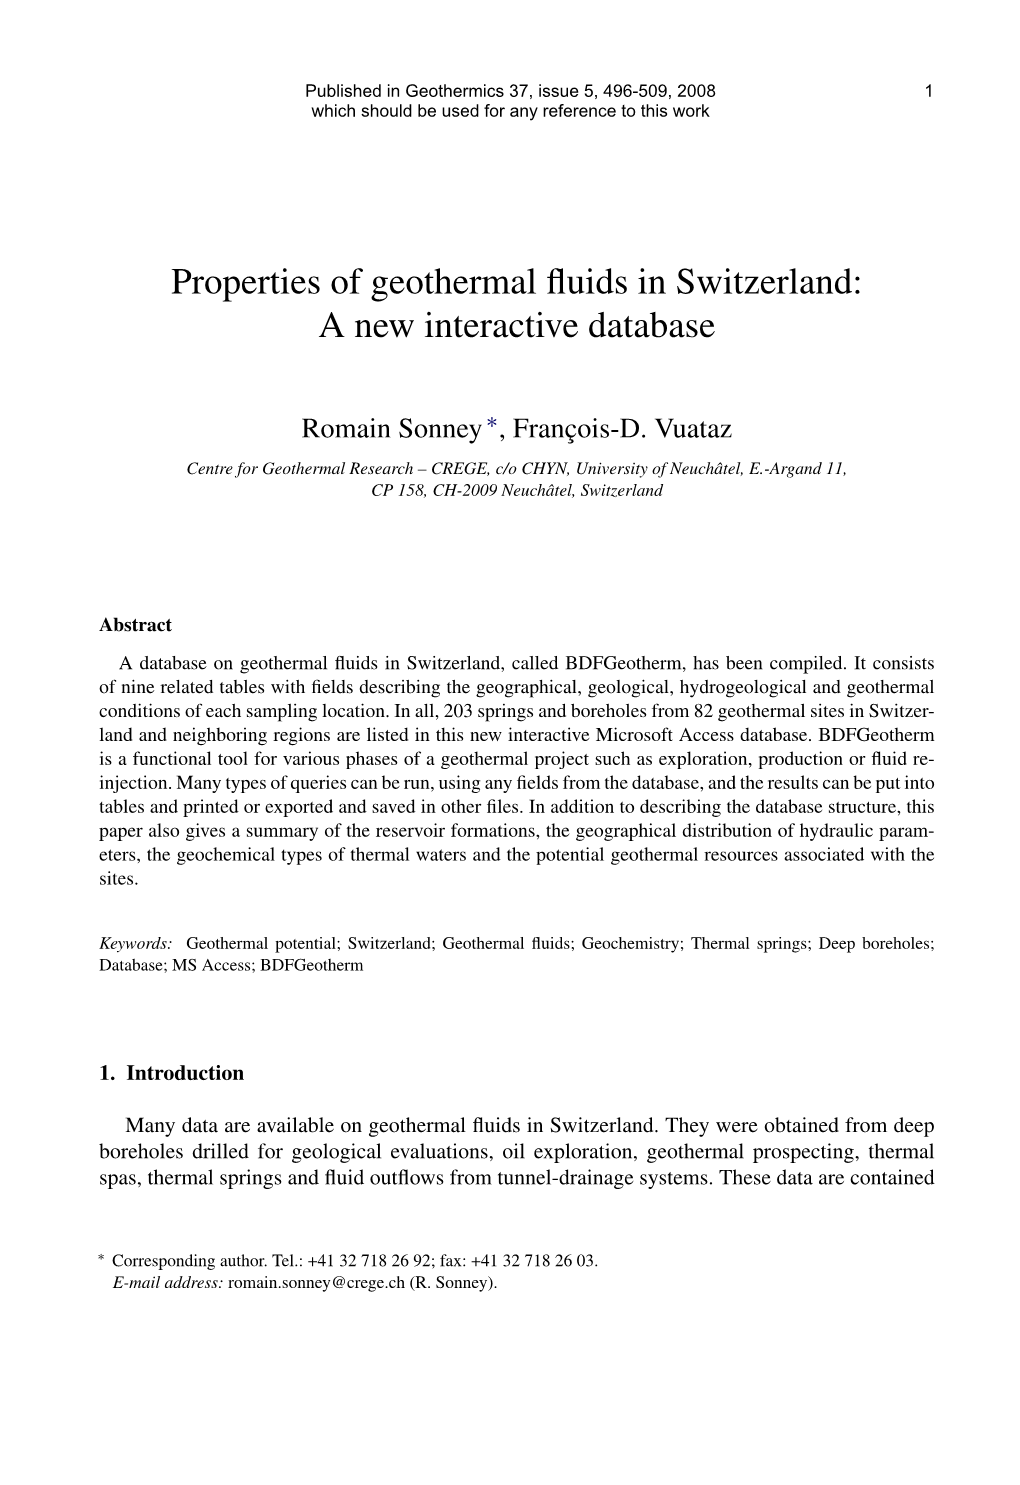 Properties of Geothermal Fluids in Switzerland